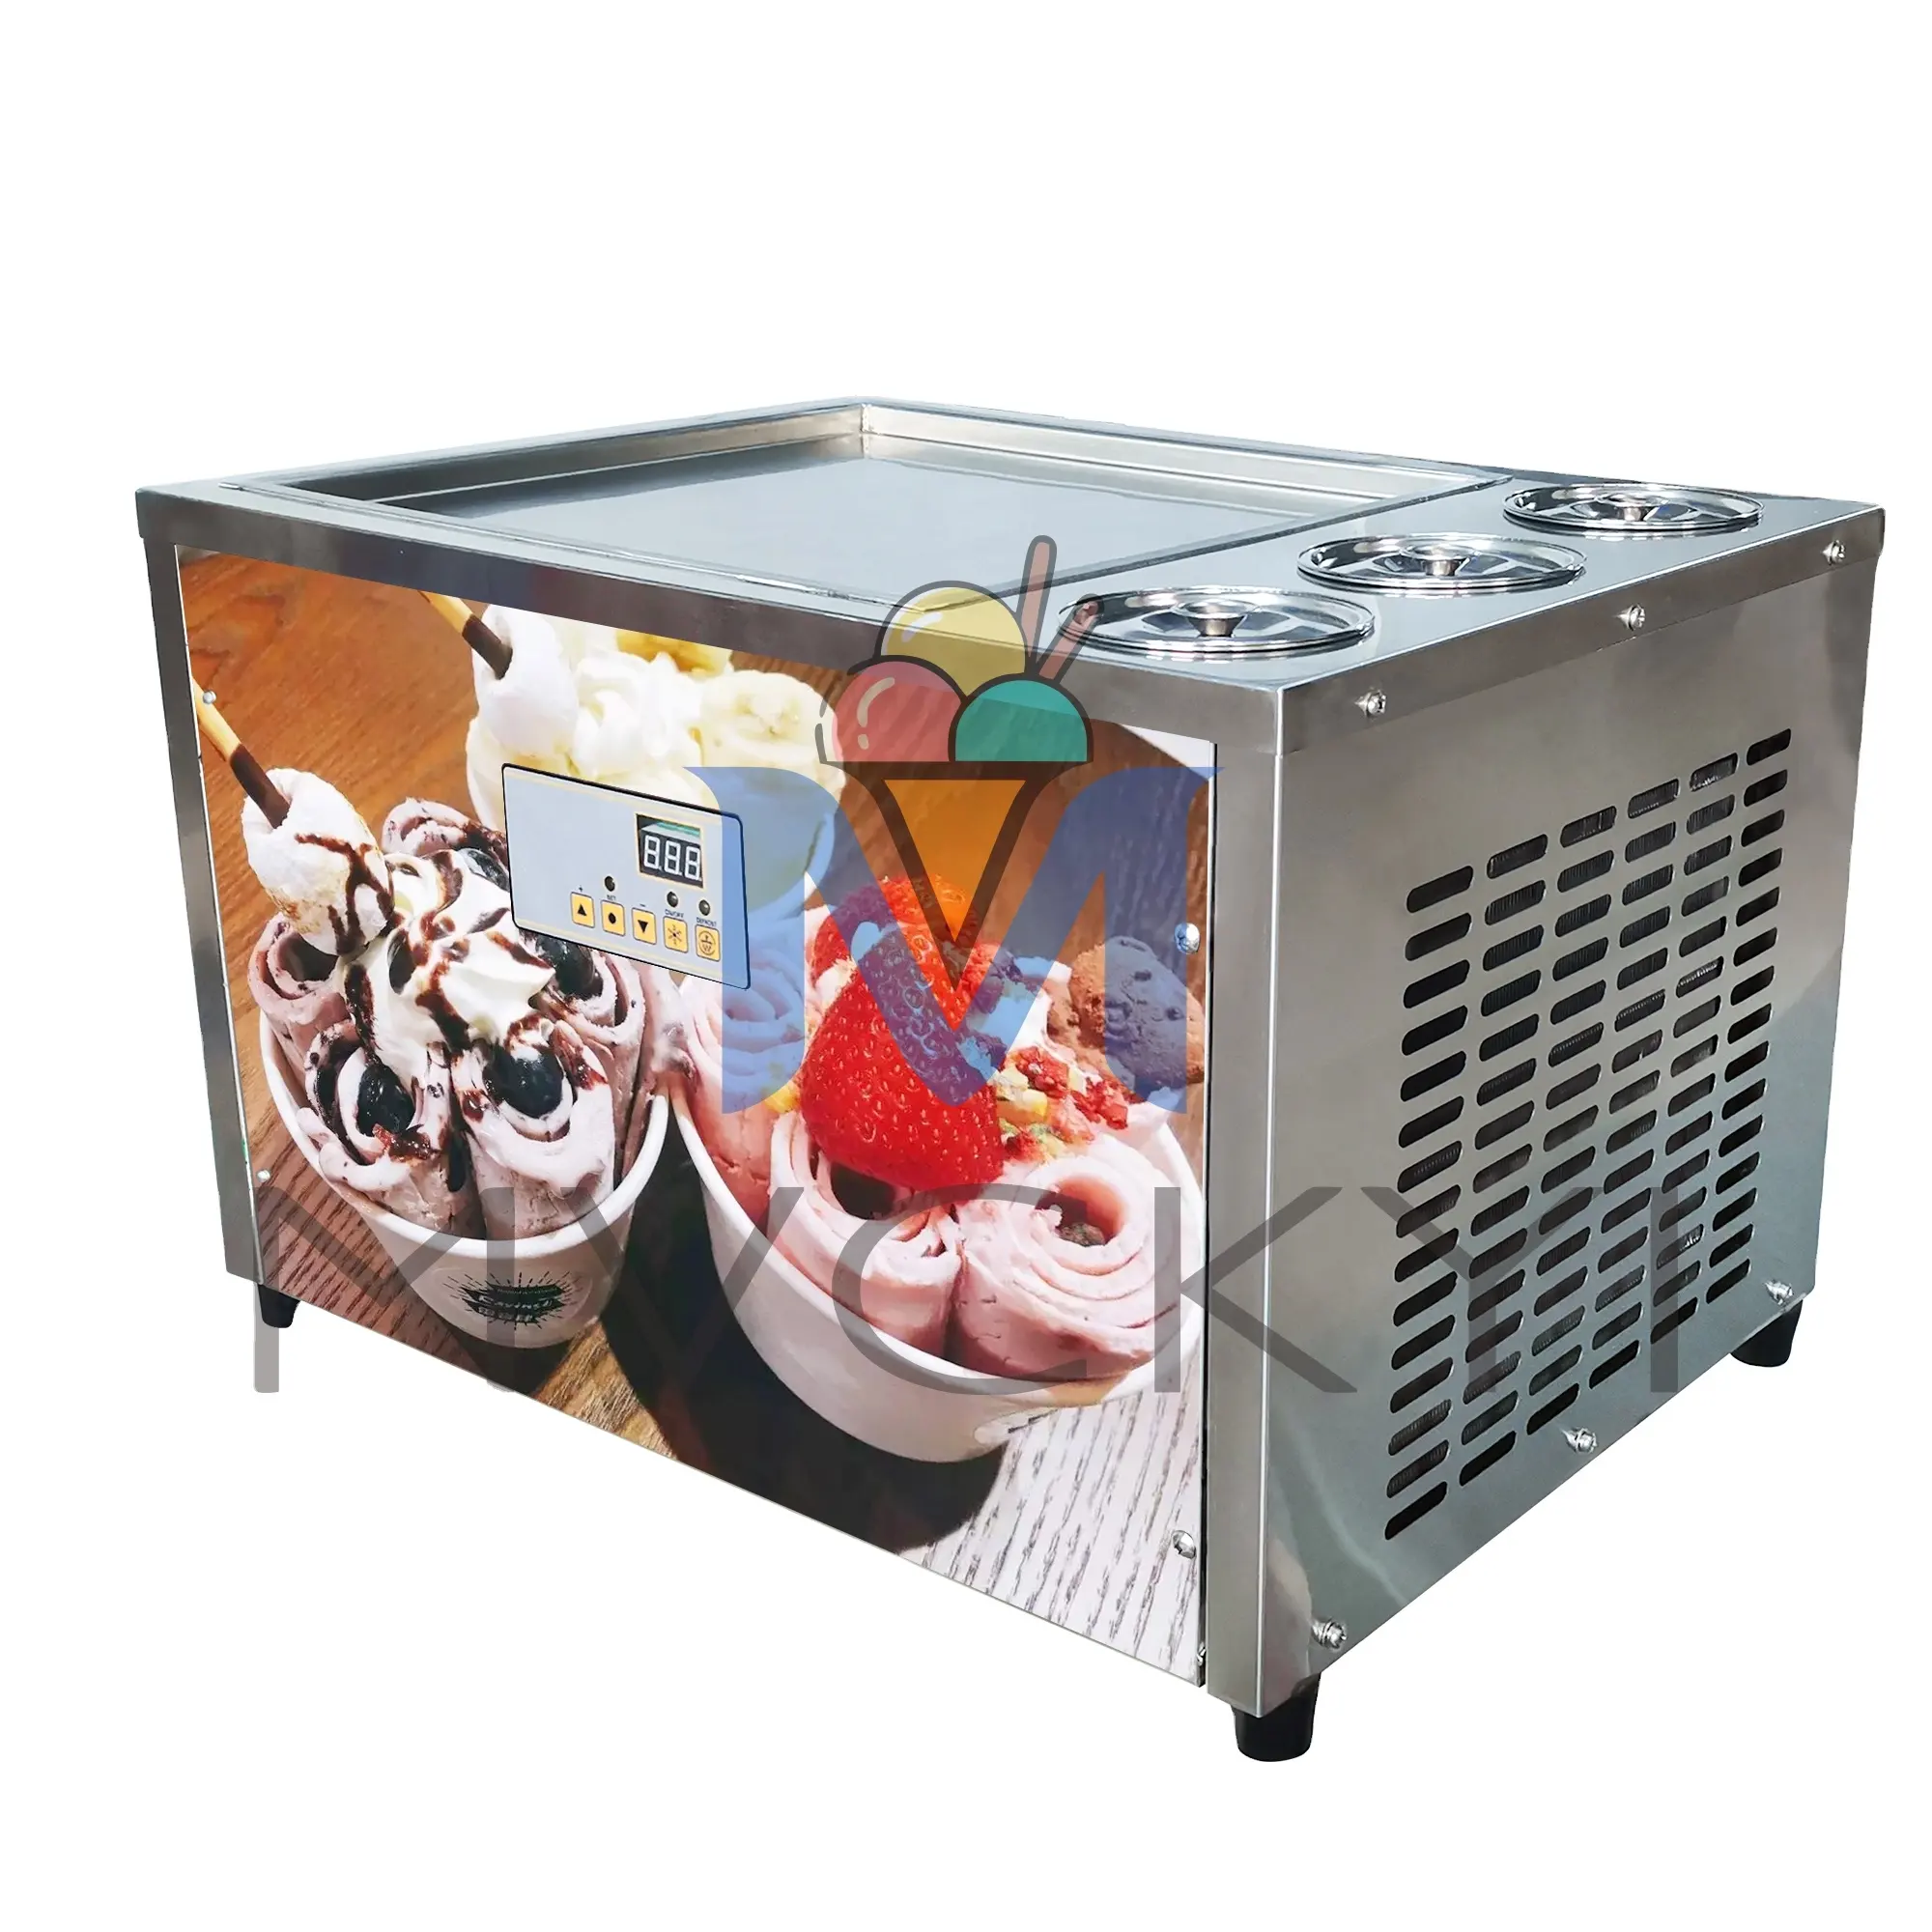 Mvckyi macchina per gelato commerciale in rotolo con secchi da 3 pezzi/padella per gelato allo Yogurt congelato/macchina per rotoli di gelato fritto quadrato